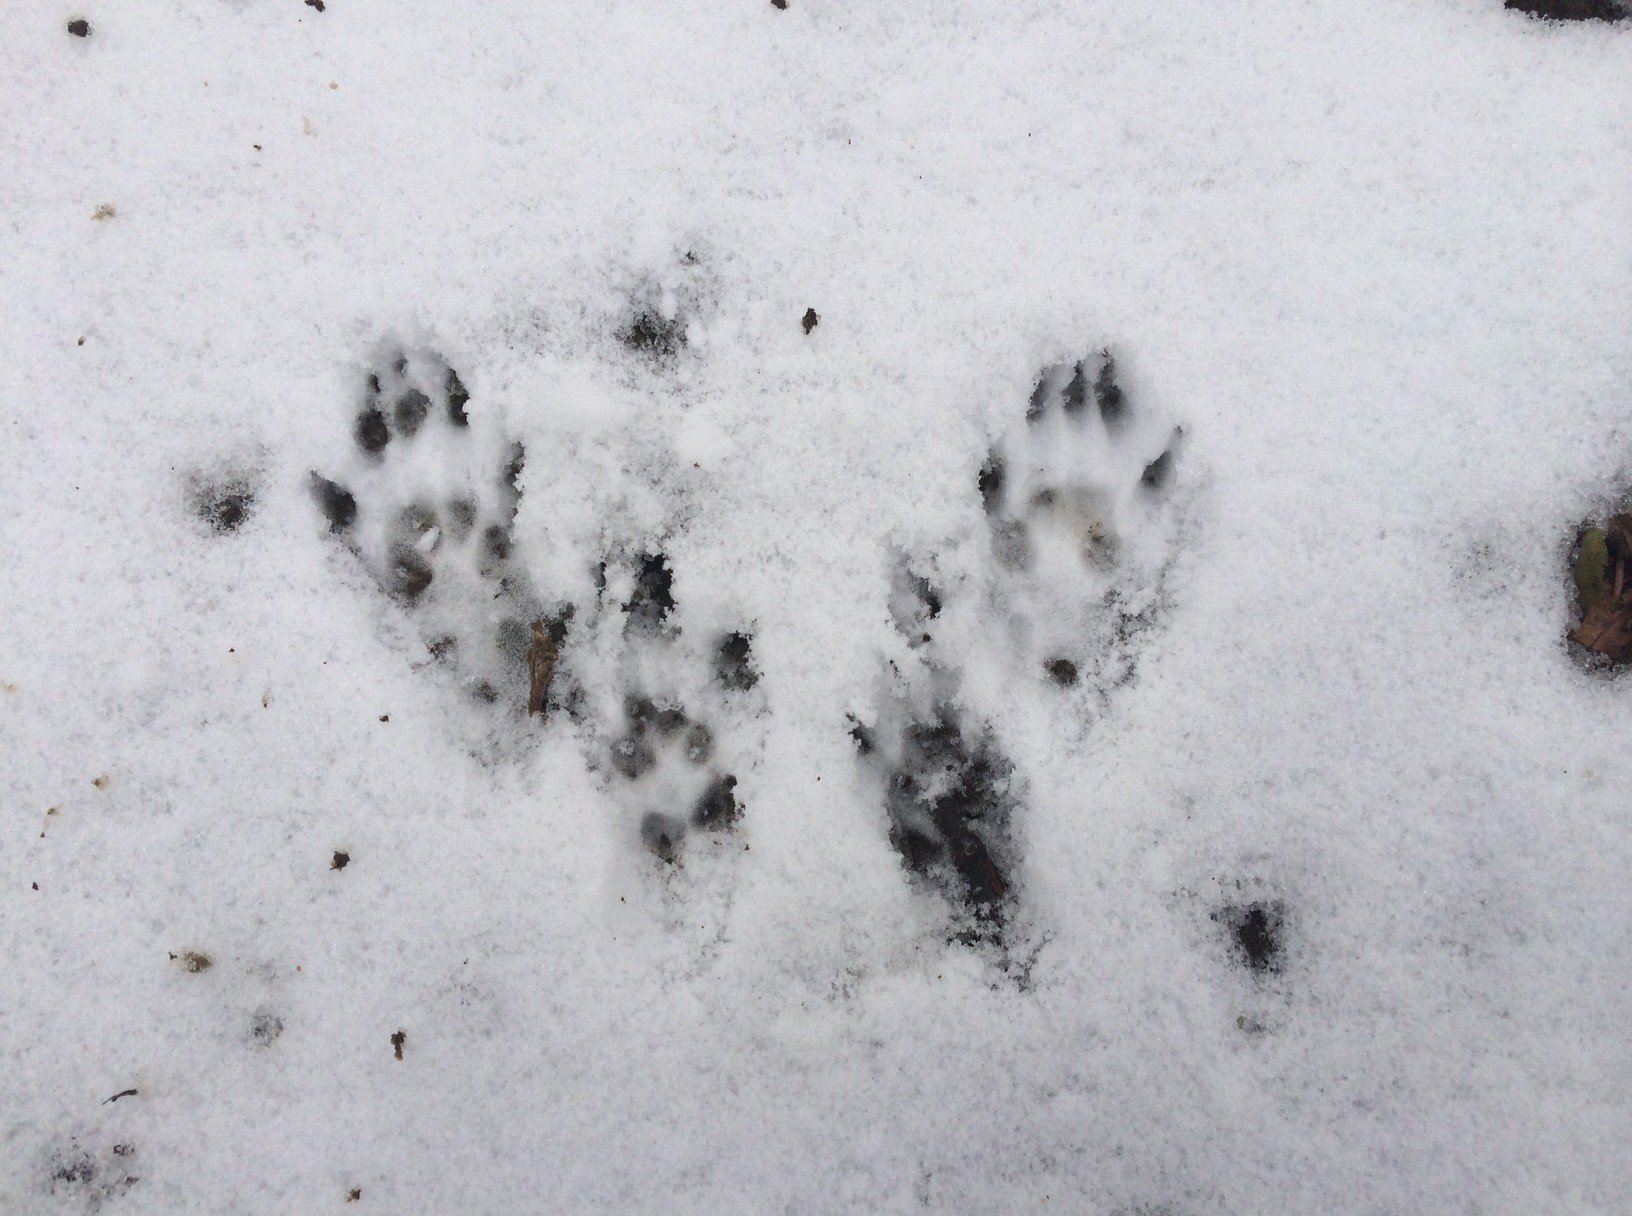 Зверя по следам слушать. Следы карельских животных. Следы енотовидной собаки. Следы зайца лисы медведя. Собачьи следы на снегу.